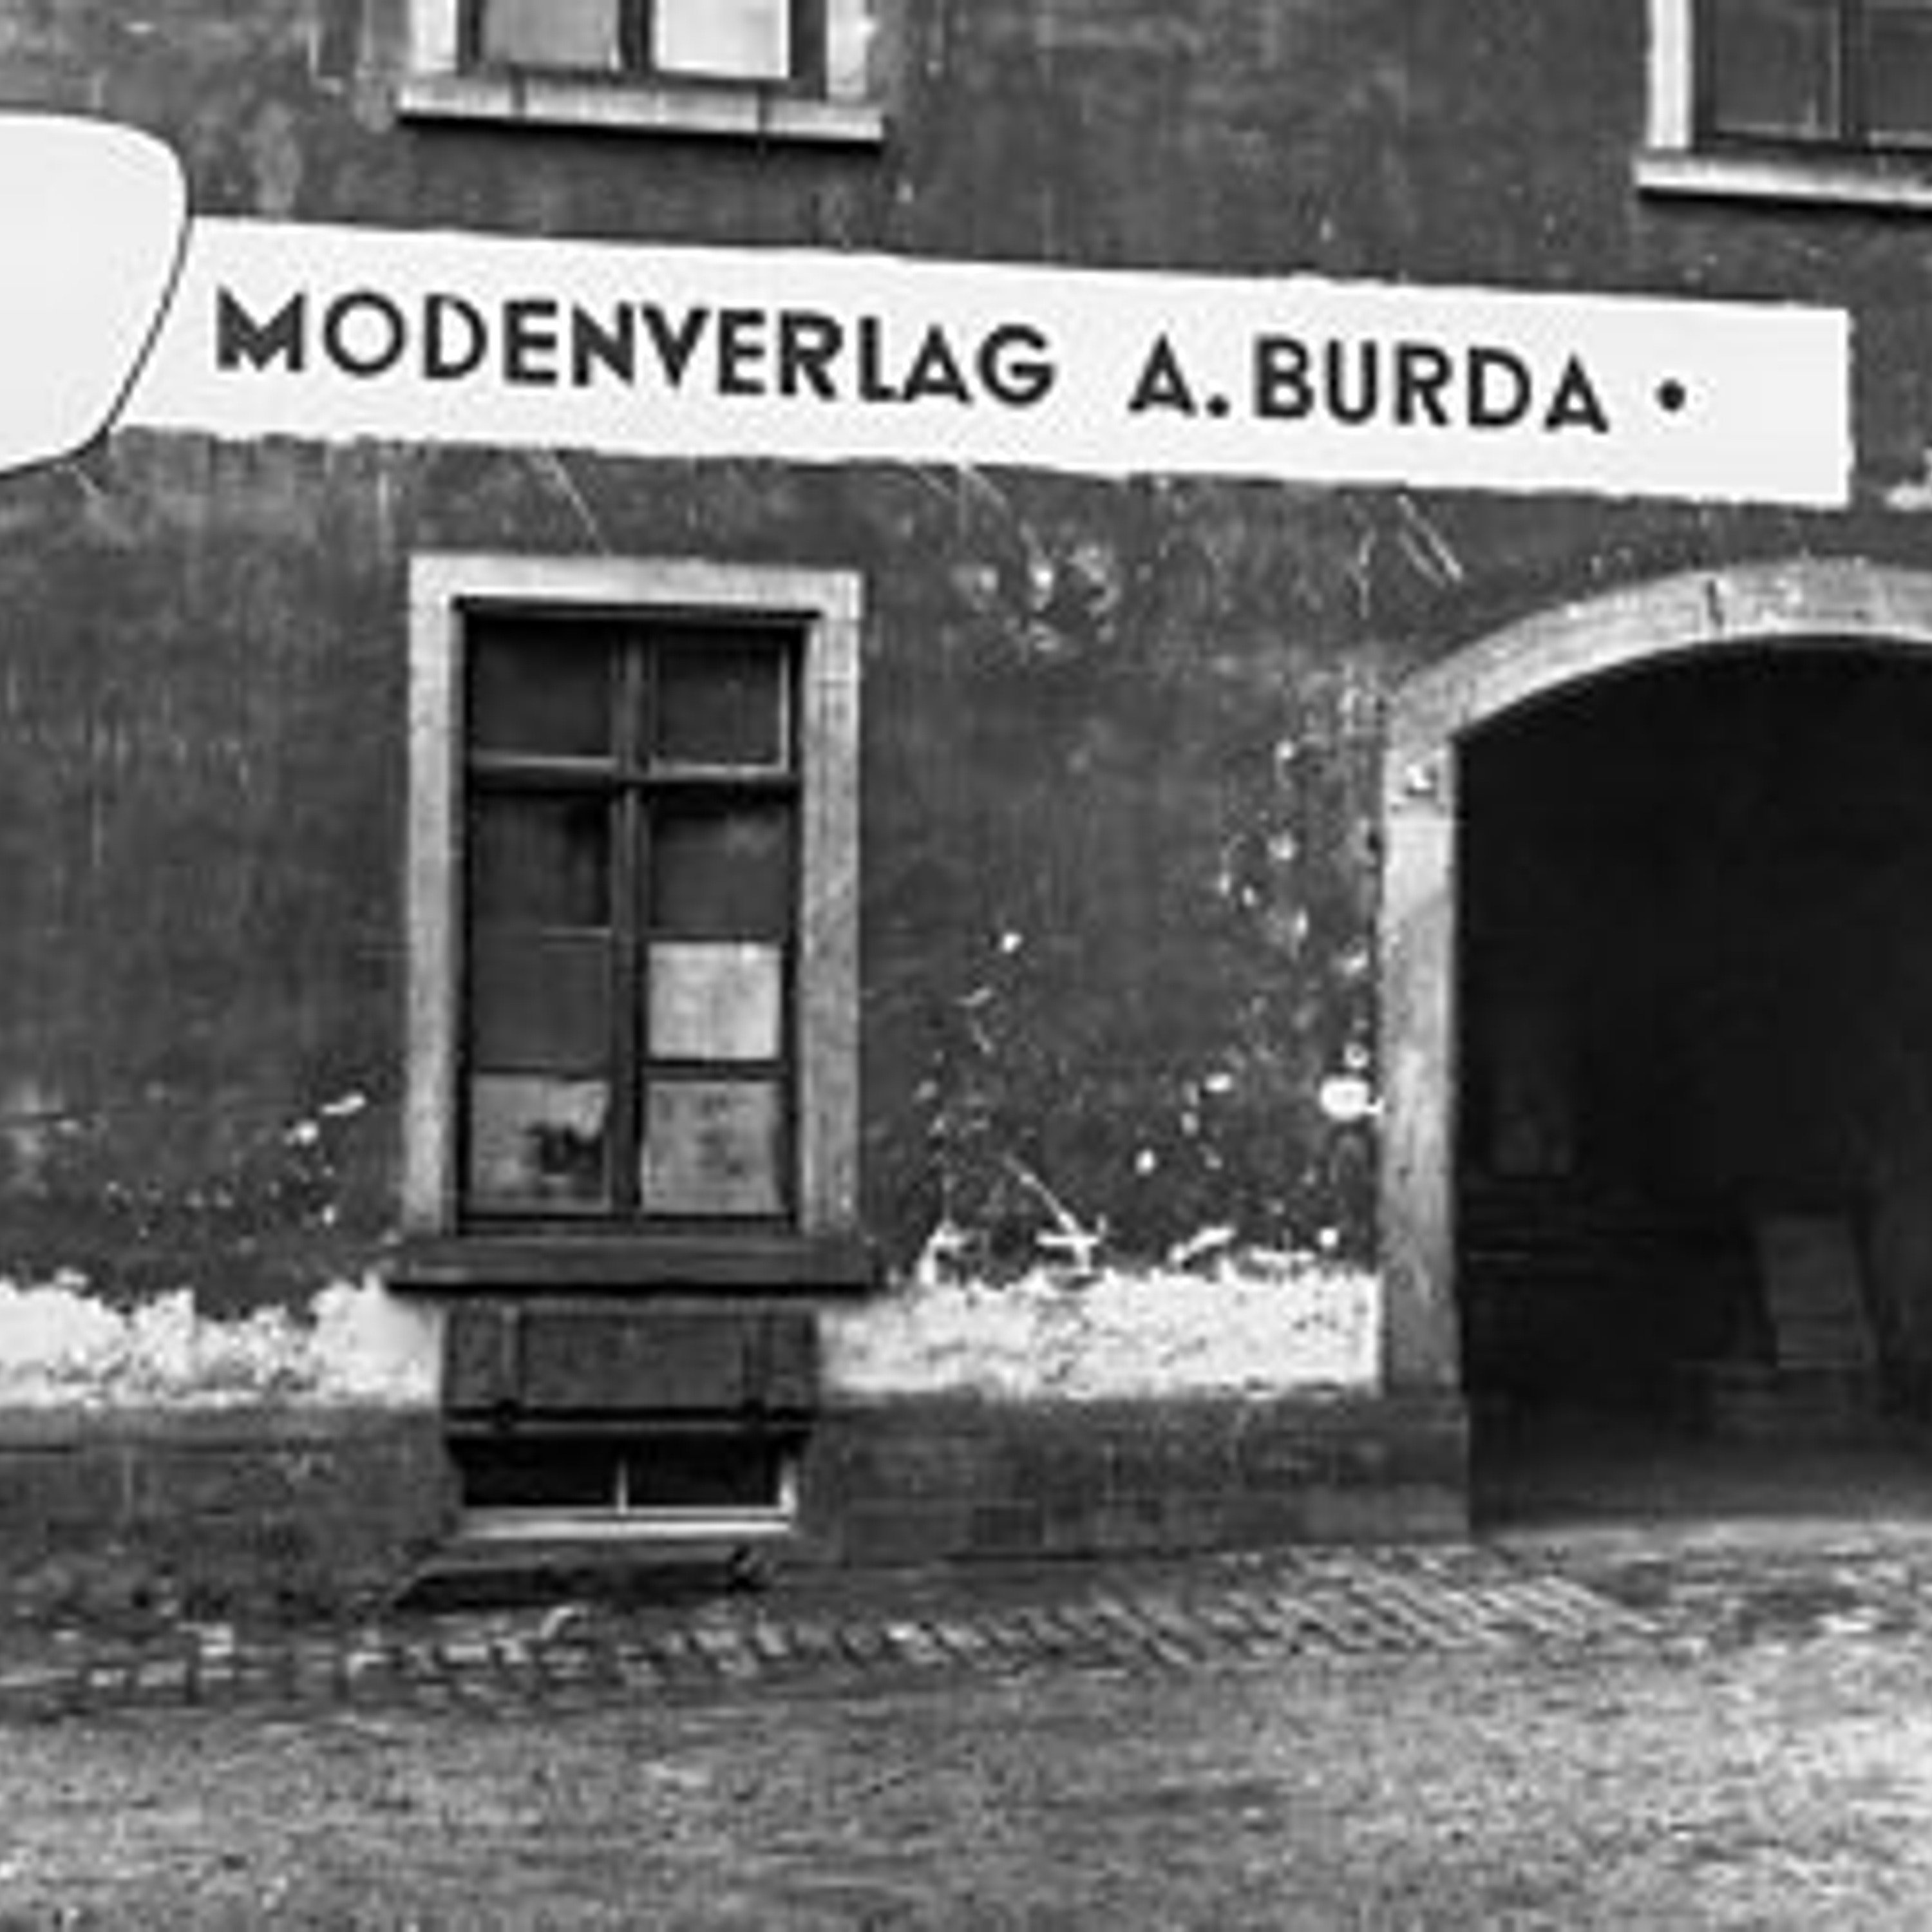 Здесь началась история журнала Burda. Надпись на немецком гласит: "Издательство мод АБурда".